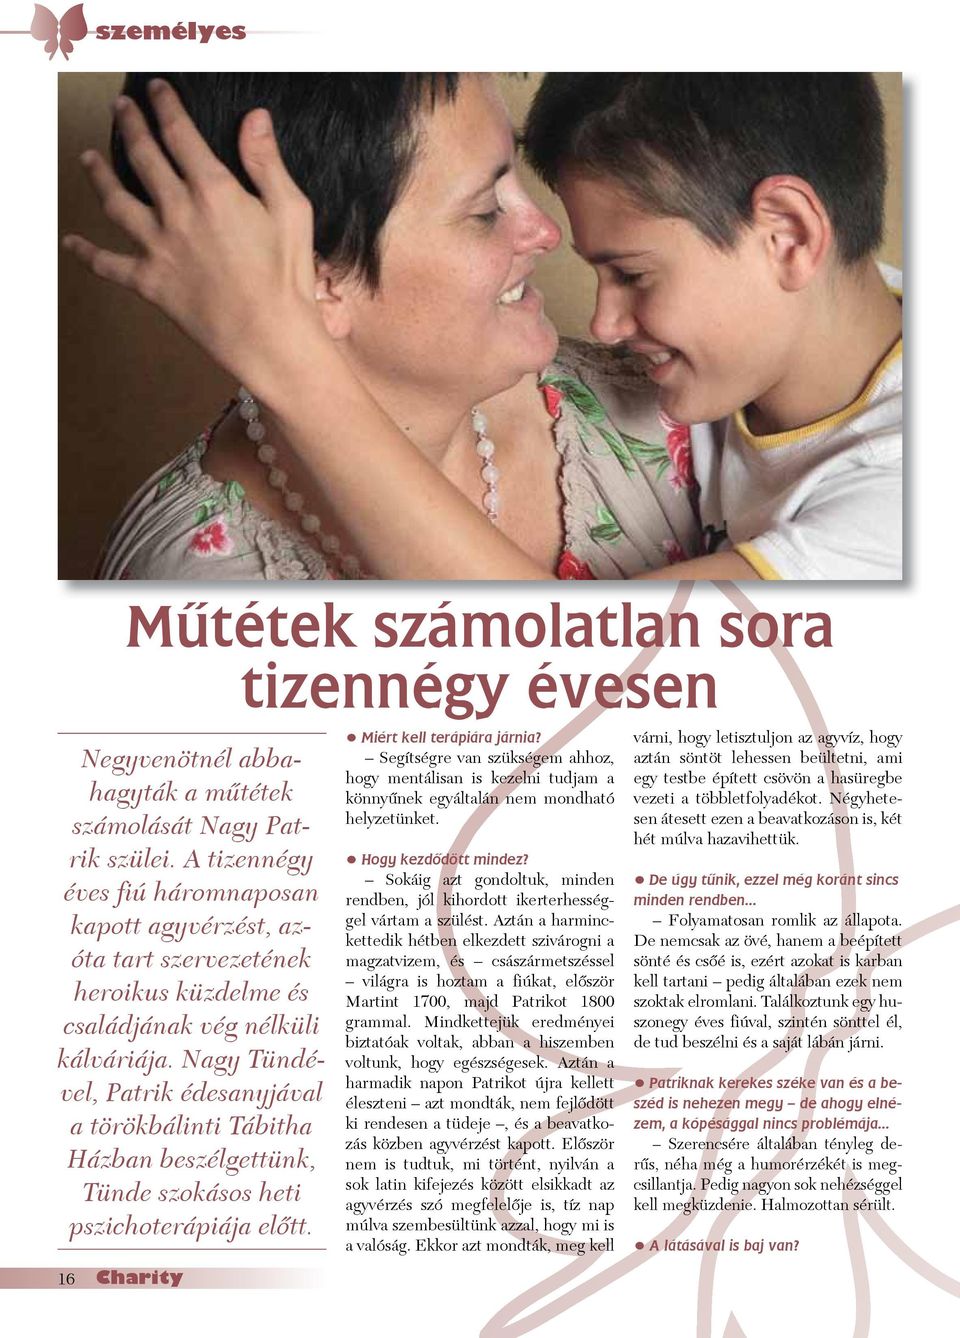 Nagy Tündével, Patrik édesanyjával a törökbálinti Tábitha Házban beszélgettünk, Tünde szokásos heti pszichoterápiája elòtt. Miért kell terápiára járnia?